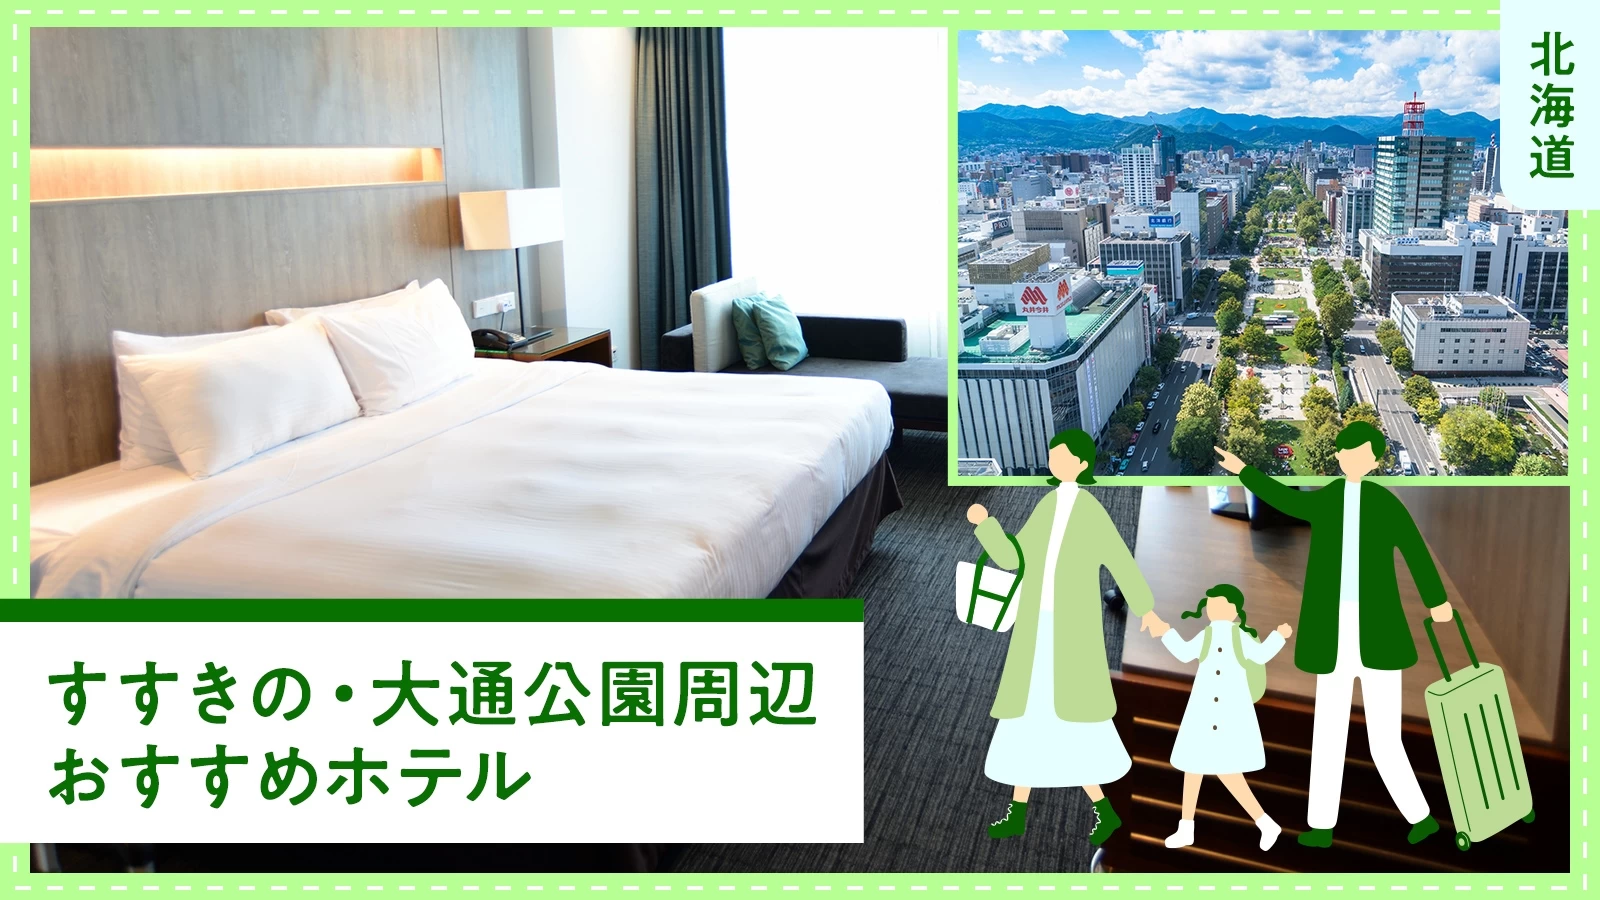 【北海道旅行】すすきの・大通公園周辺でおすすめのホテル5選